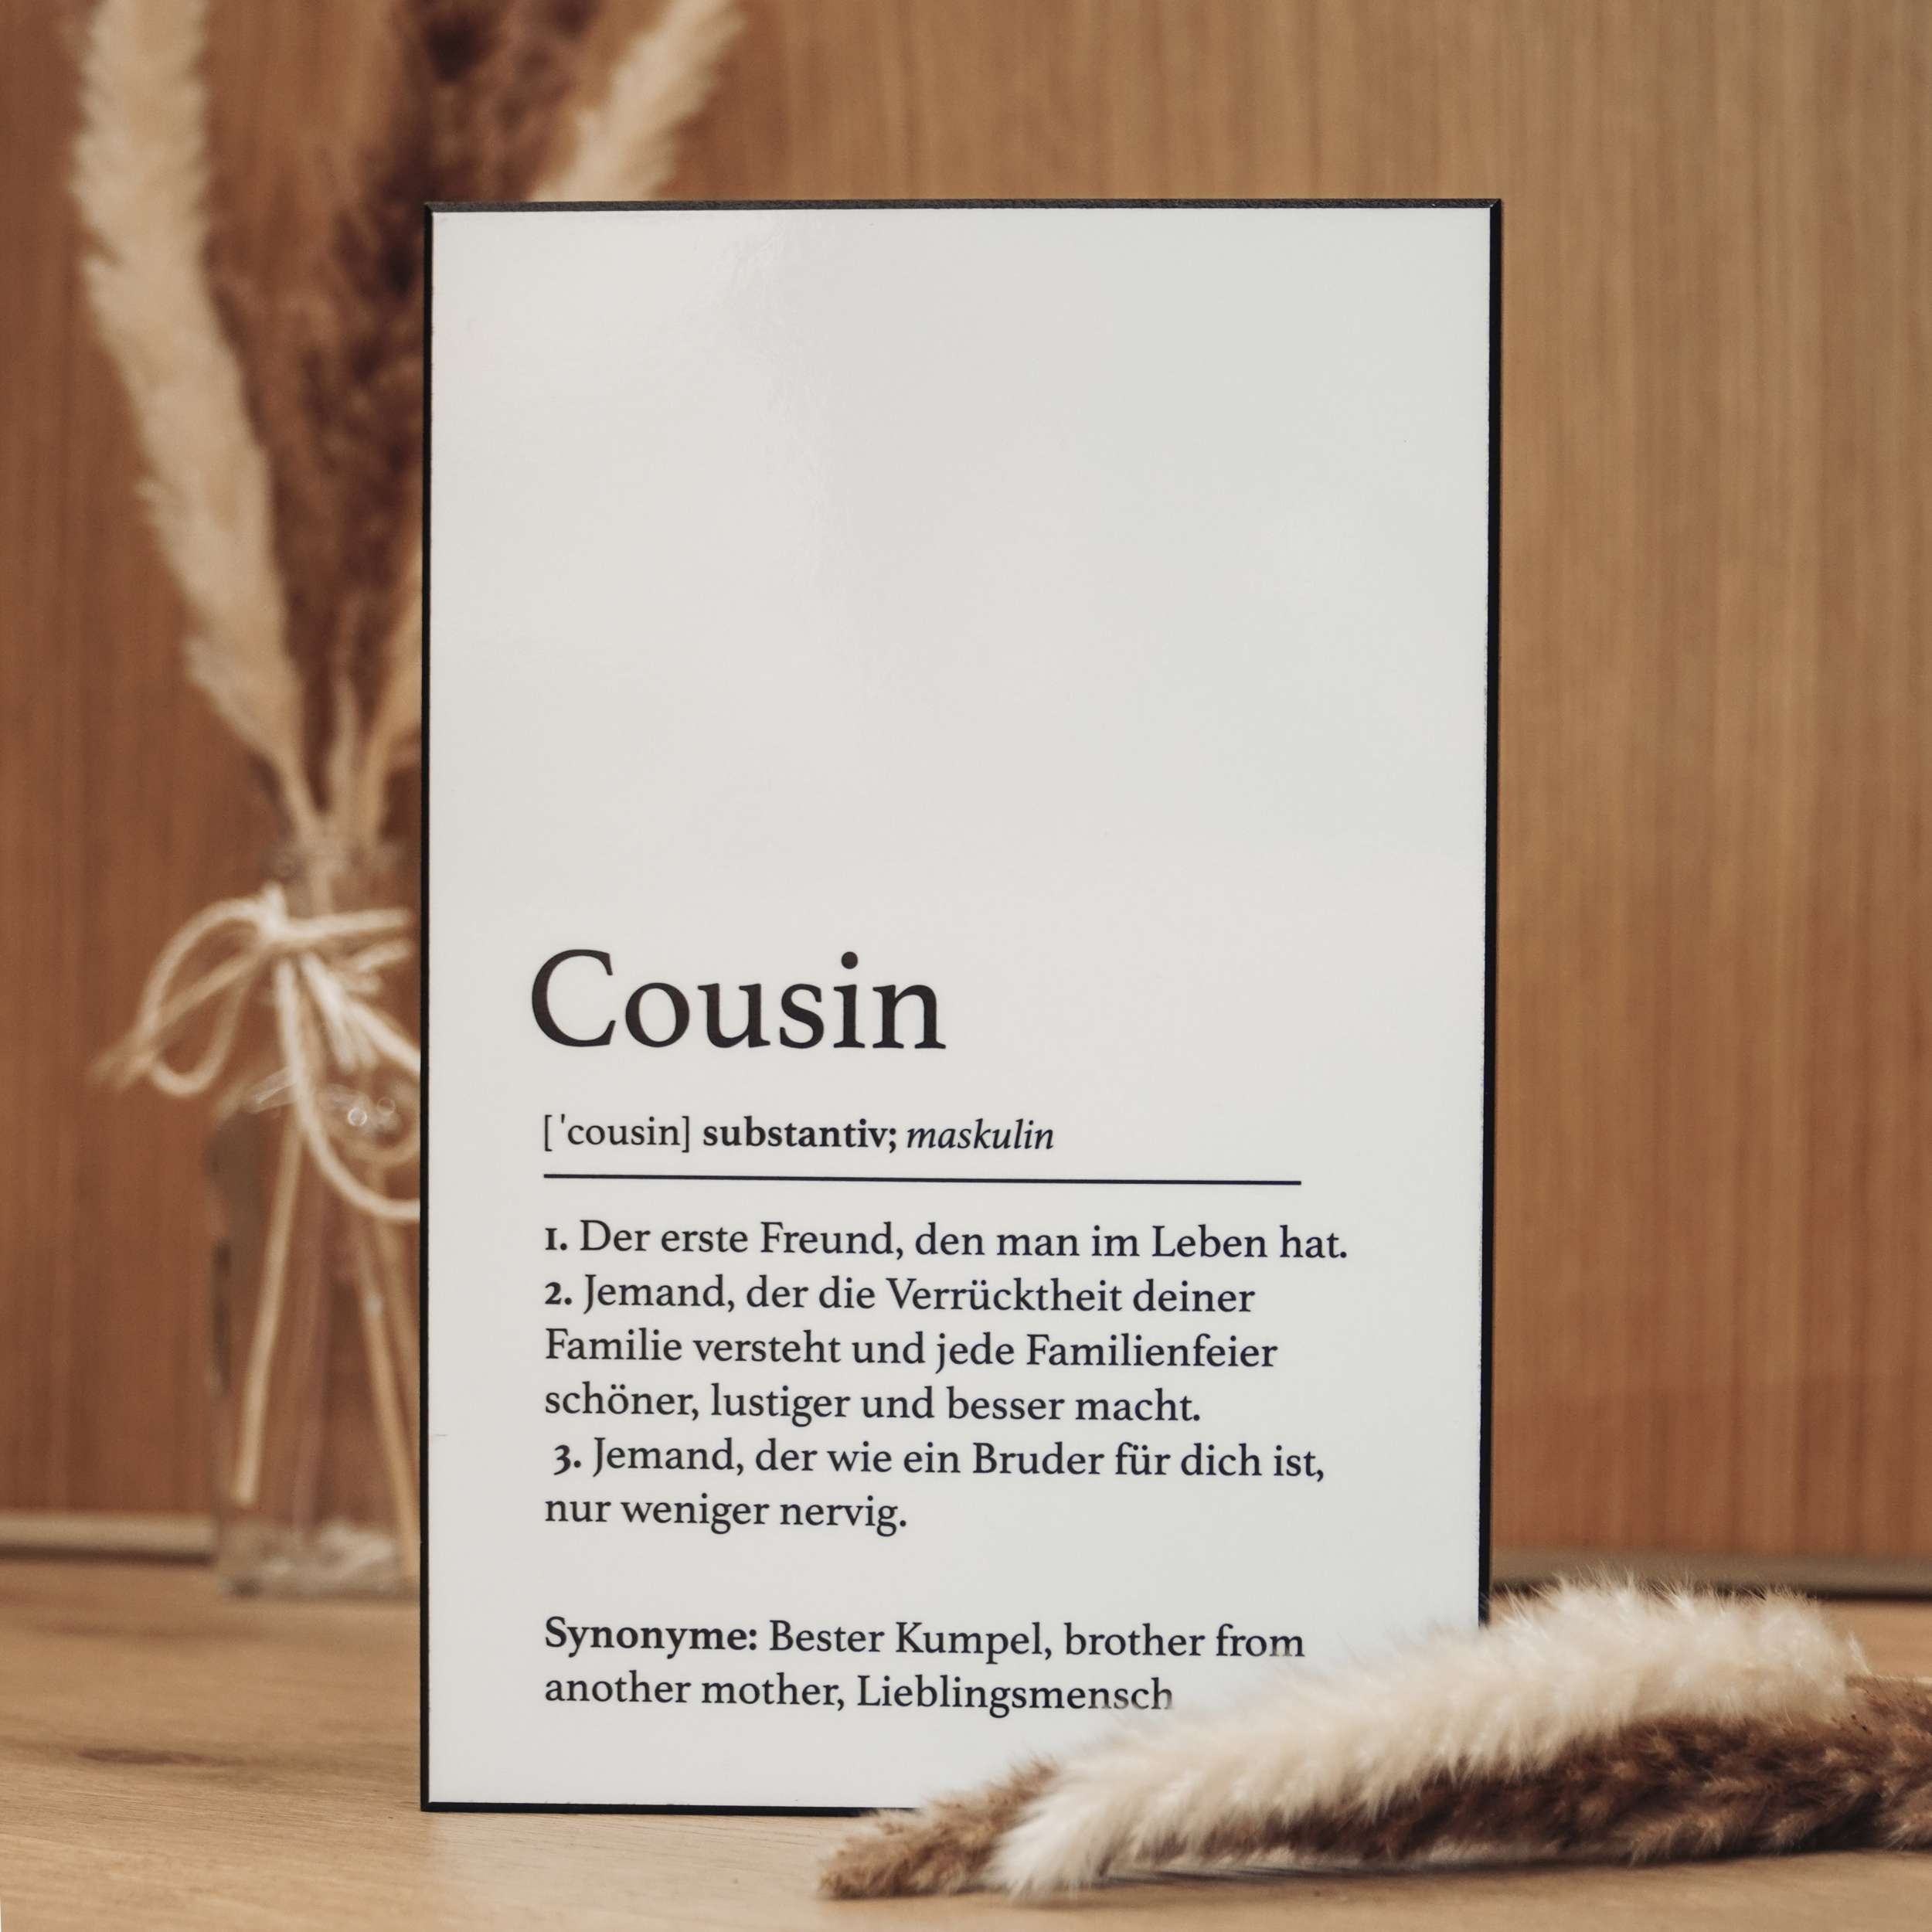 Handgefertigte Definitionstafel „Cousin“ aus erstklassigem Material – das ideale Geschenk für einen ganz besonderen Mann in deinem Leben.